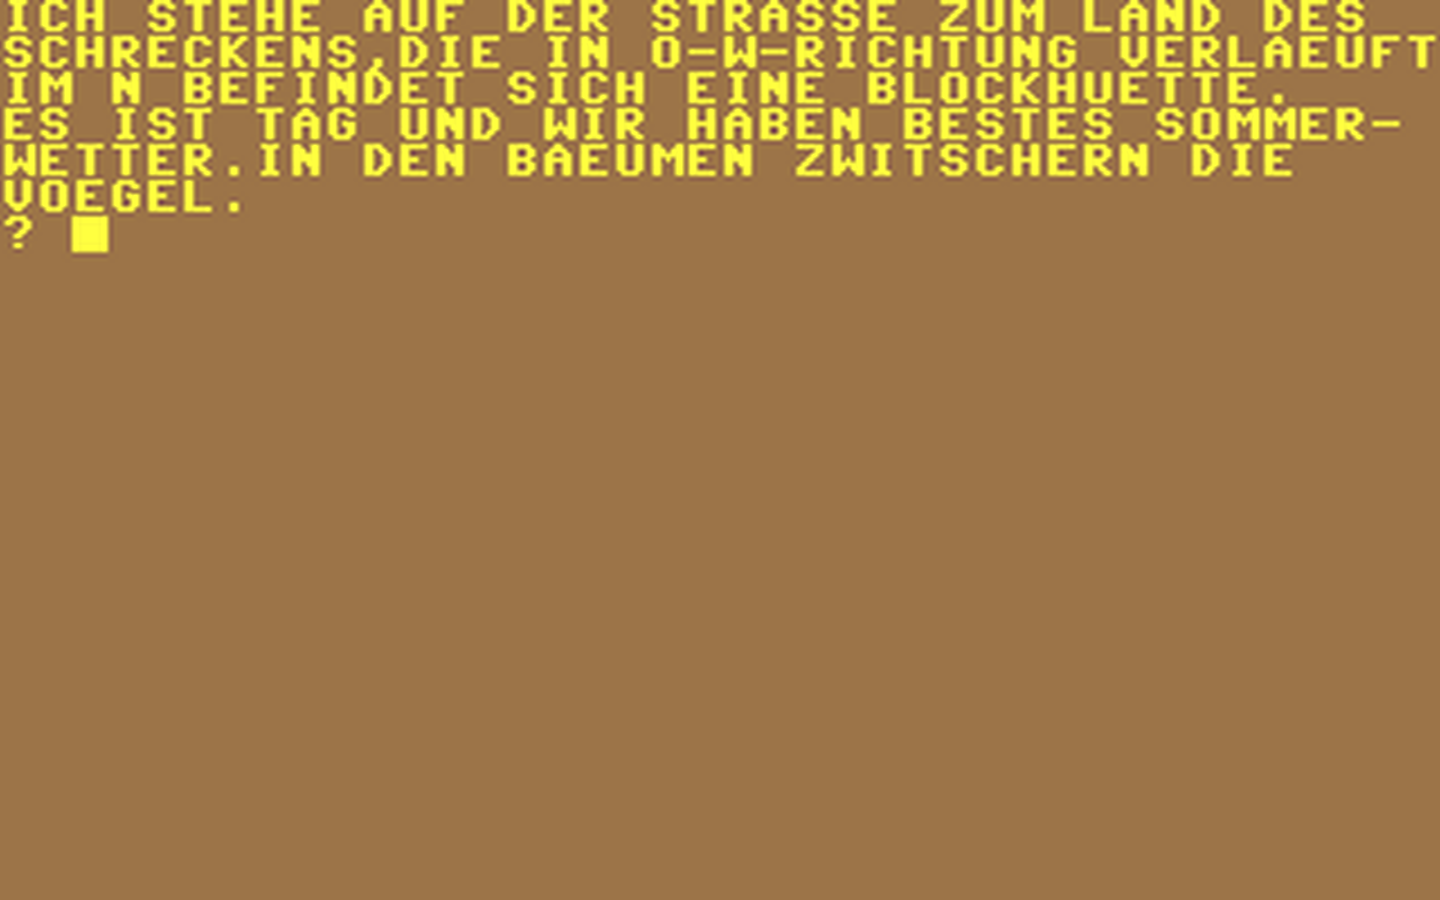 C64 GameBase Adventure_-_Das_Schreckensland (Public_Domain)